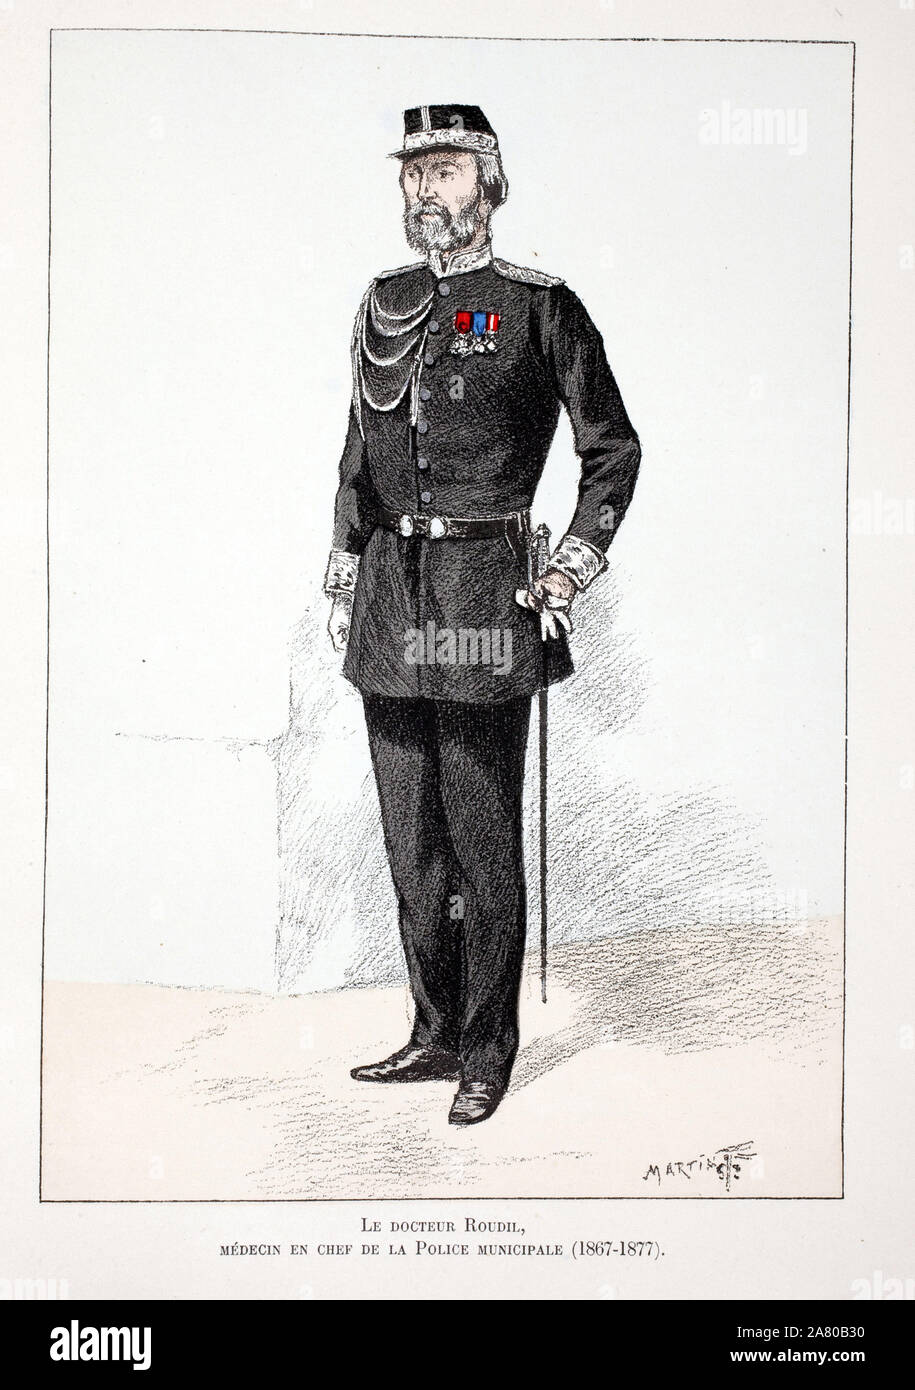 Le docteur Roudil, médecin en chef de la police municipale (1867-1877). Eau forte en couleurs, pour illustrer "Histoire du corps des gardiens de la pa Banque D'Images